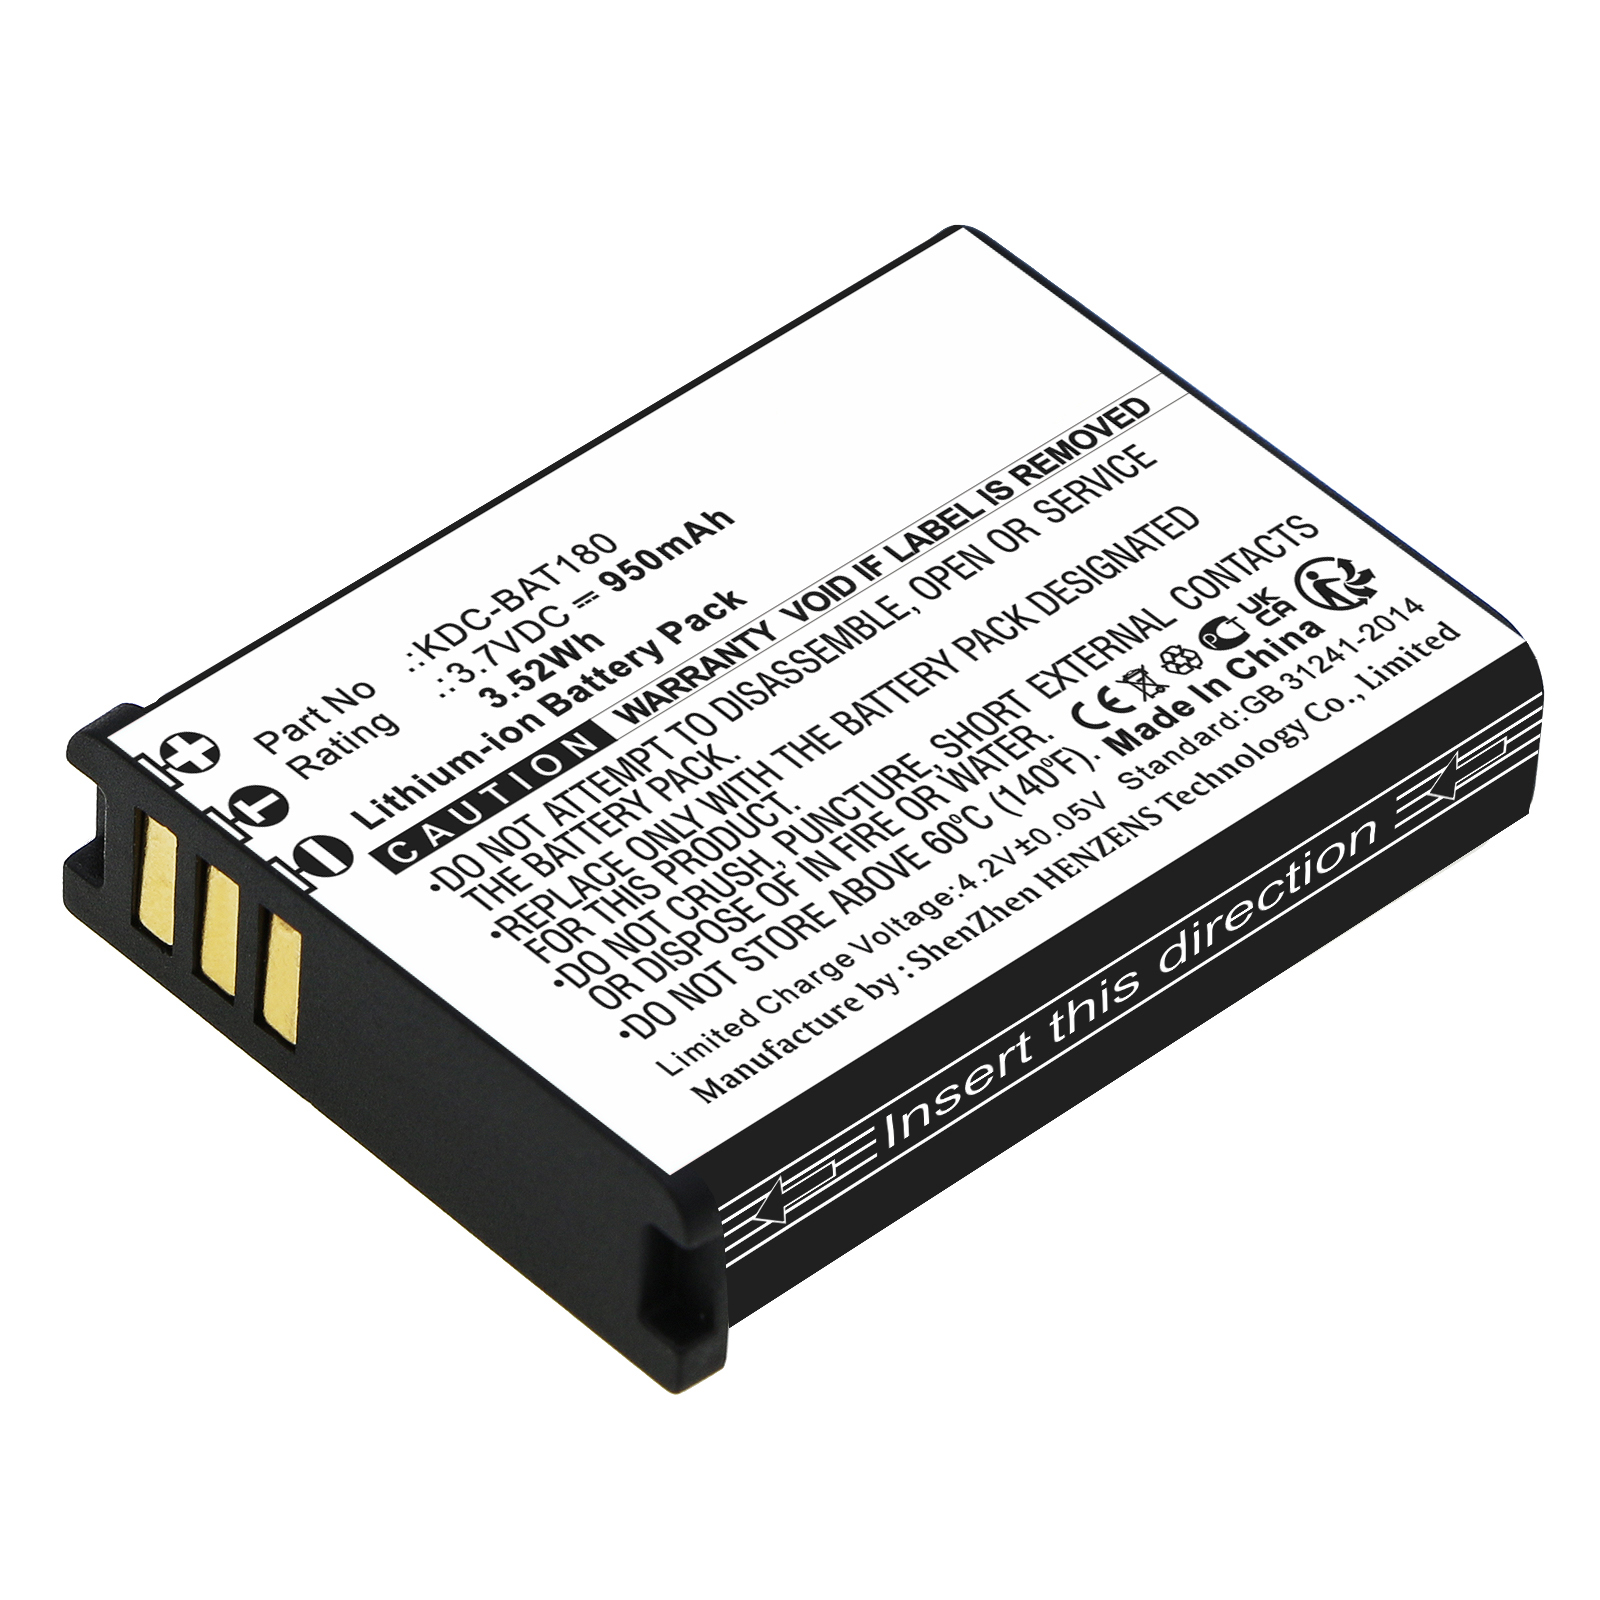 Synergy Digital Barcode Scanner Battery, Compatible with KOAMTAC KDC-BAT180 Barcode Scanner Battery (Li-ion, 3.7V, 950mAh)